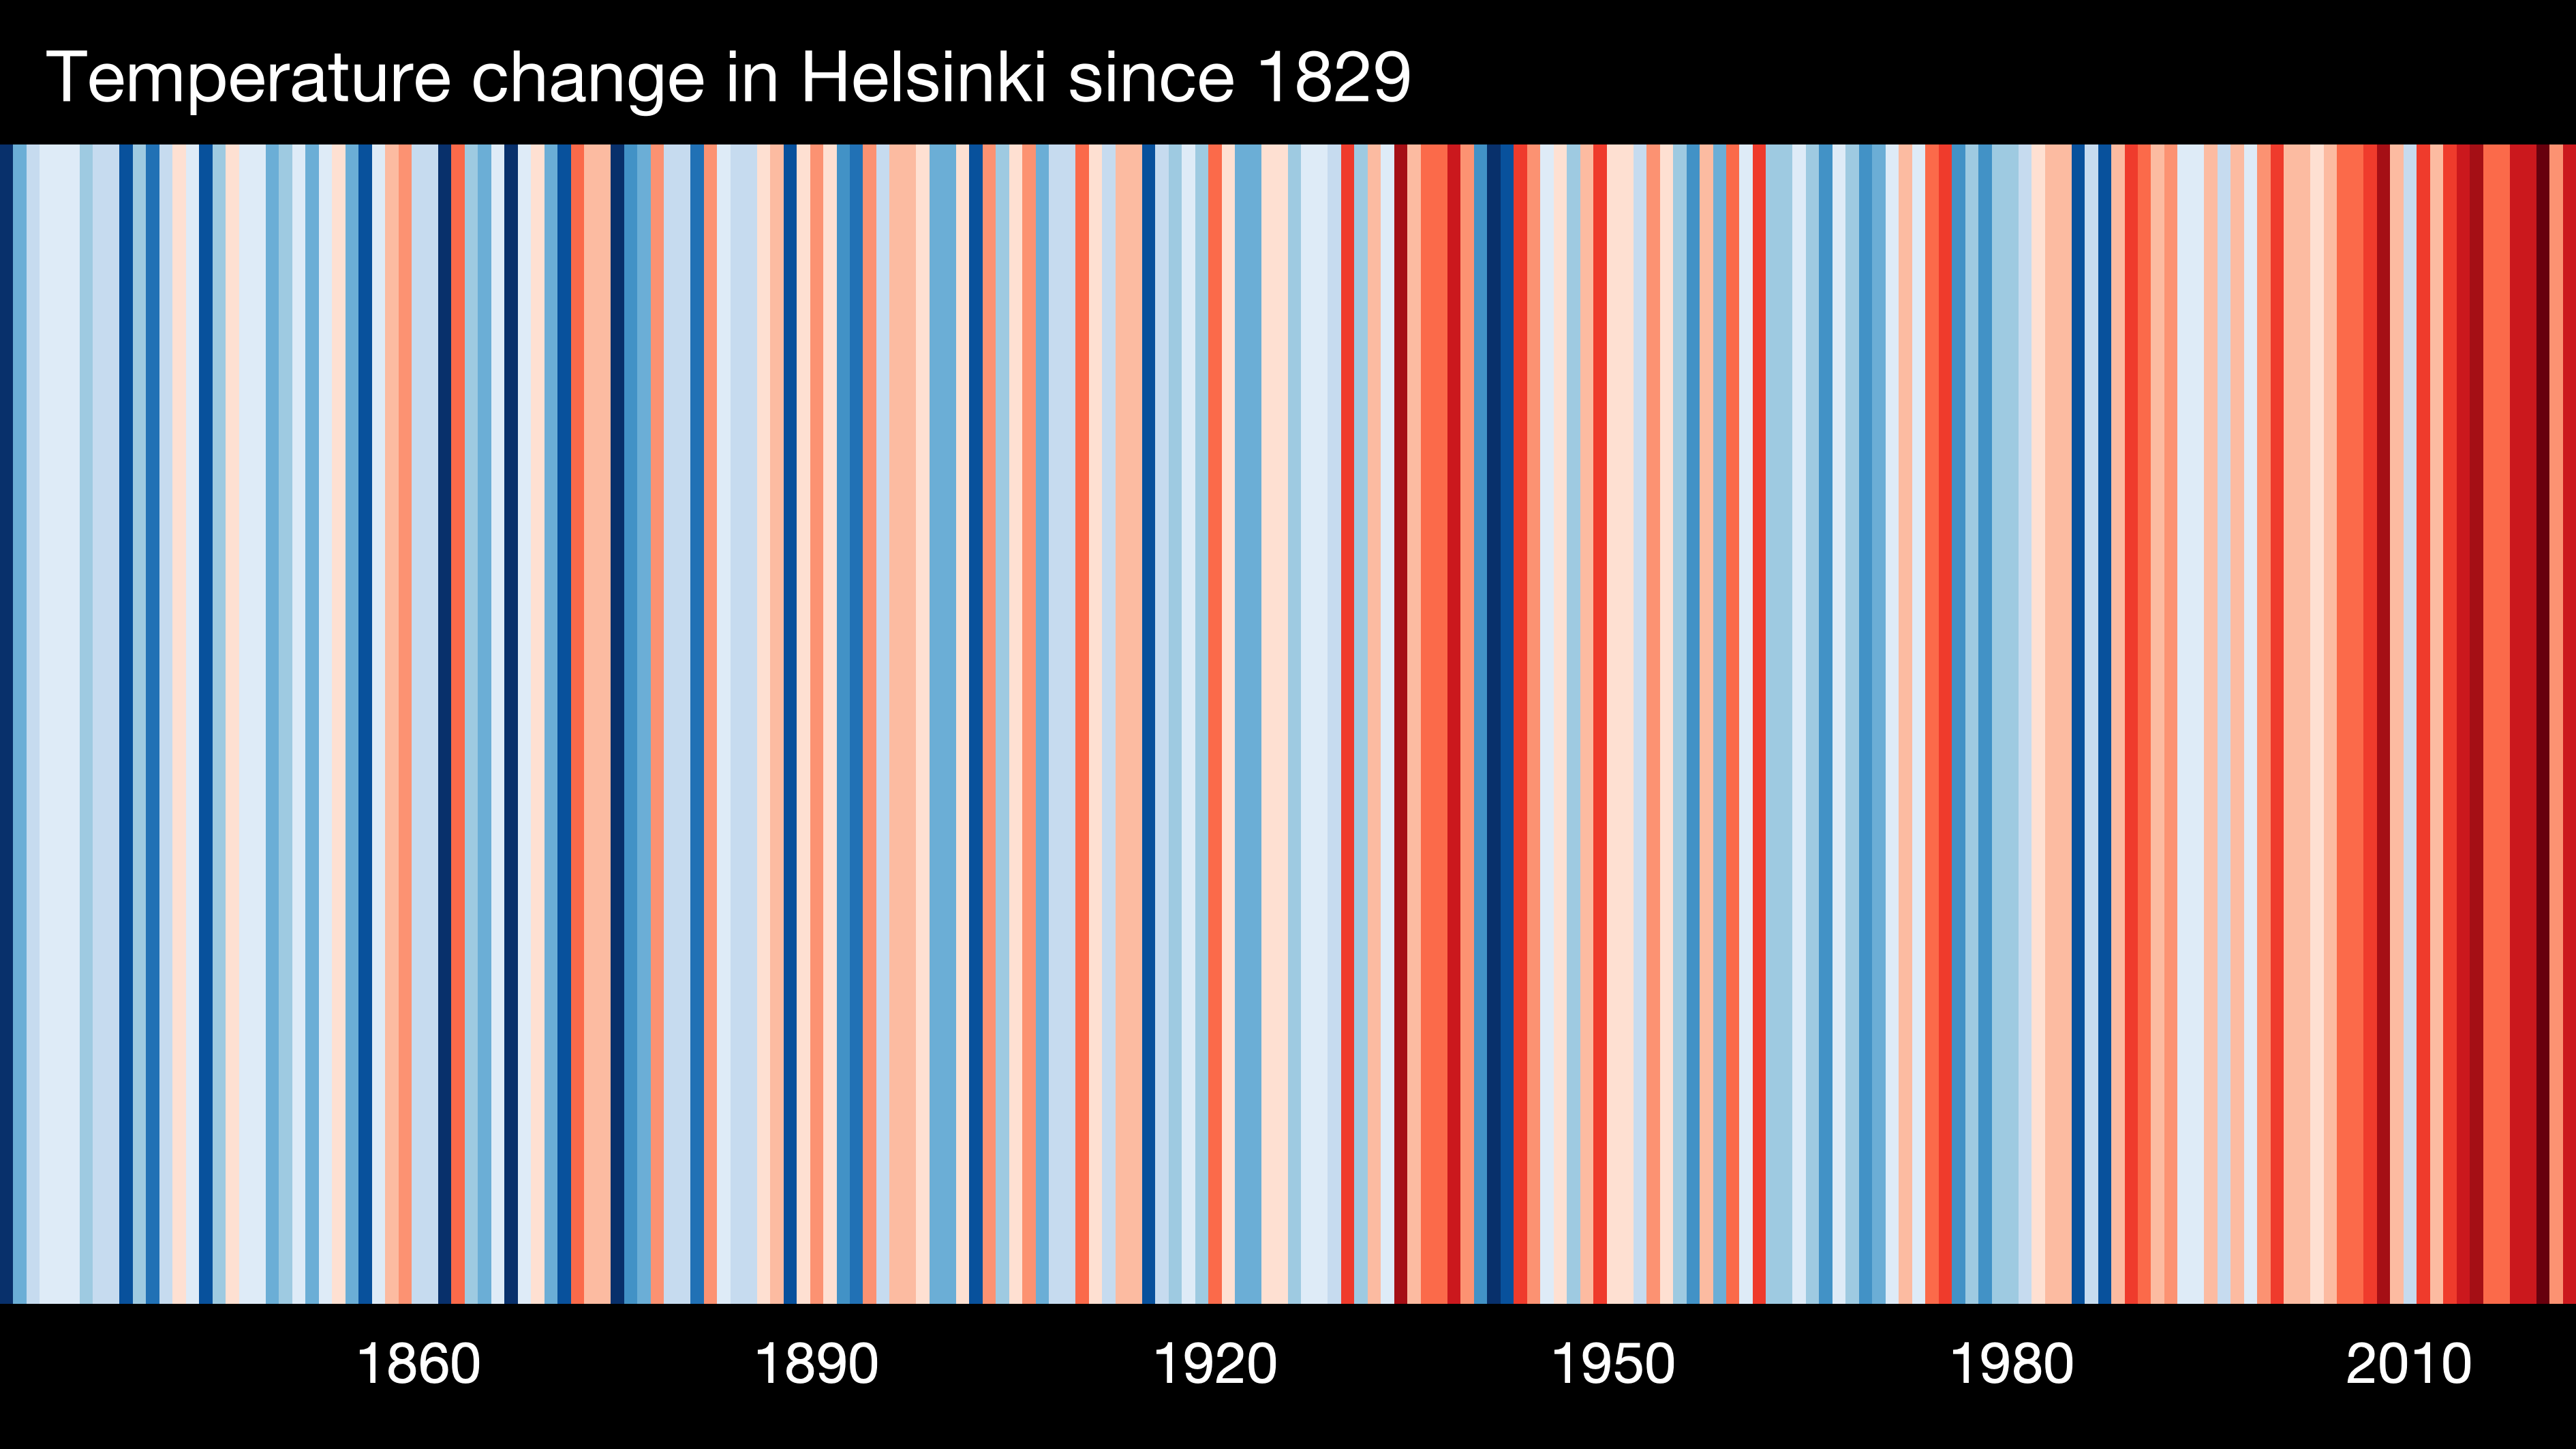 Warming as seen from Helsinki